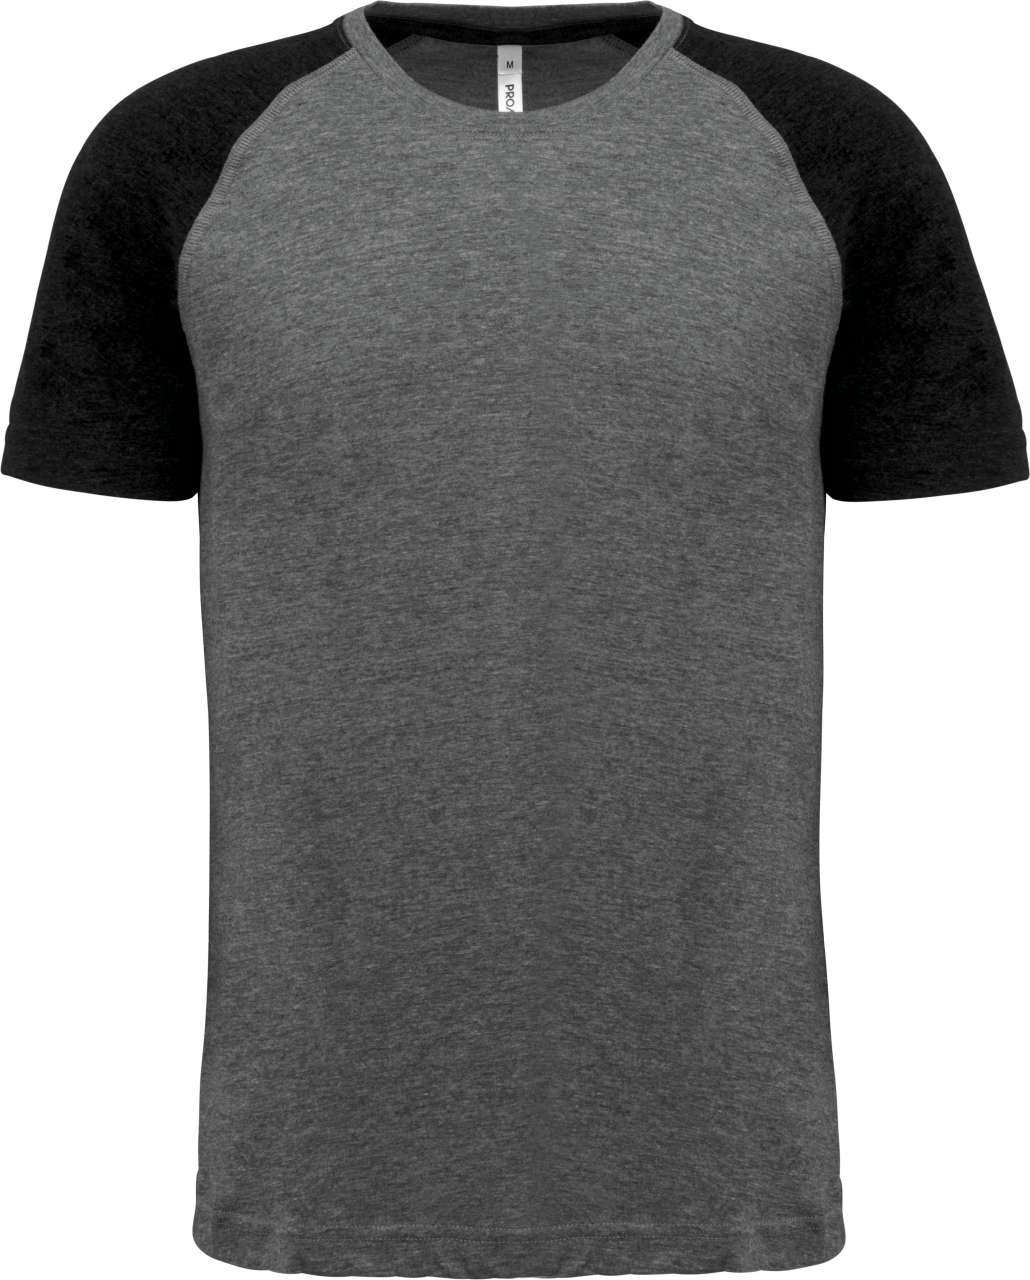 Proact Herren Sport T-Shirt Kurzarm Baumwolle Rundhals Basic Slim Fit